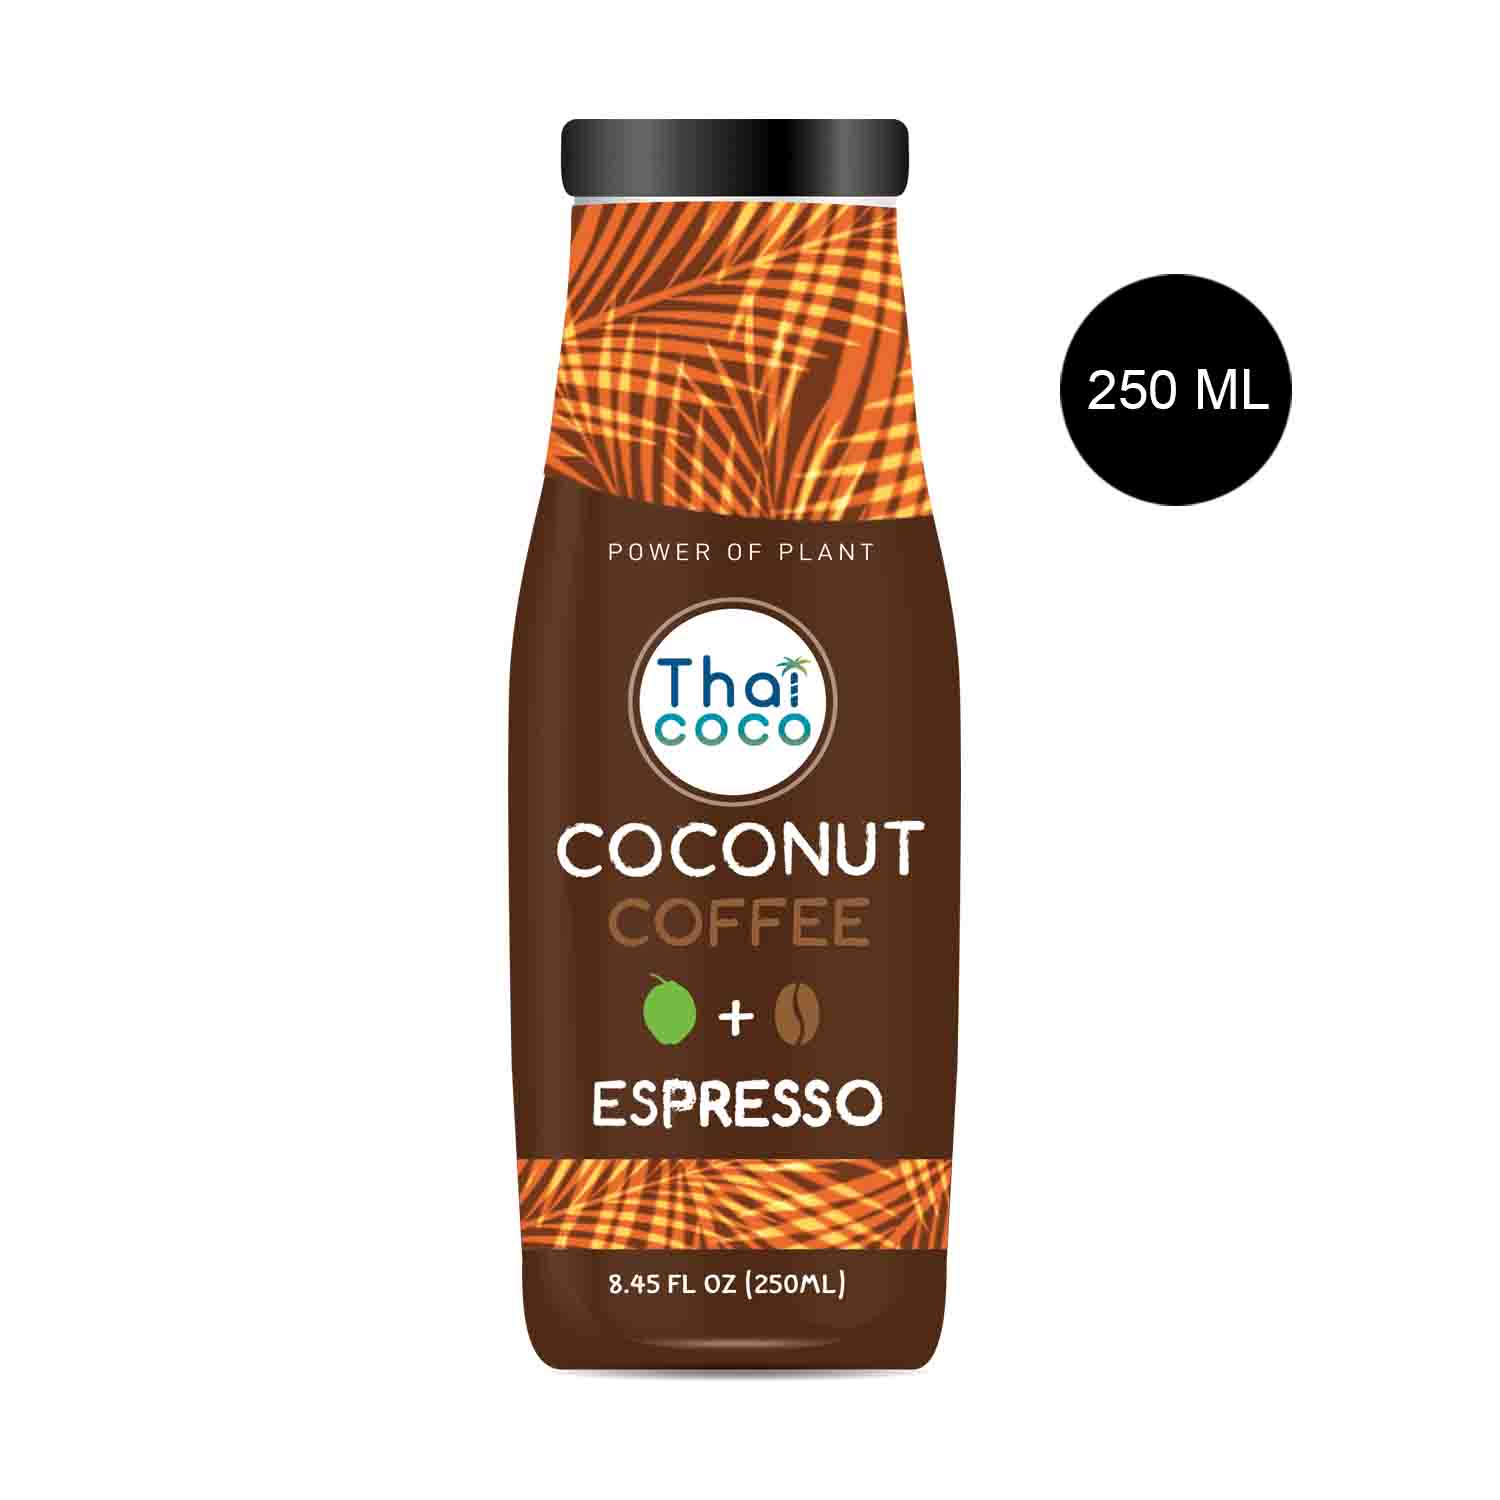 Thai Coco Coconut Coffee Espresso Flavor 250 ml